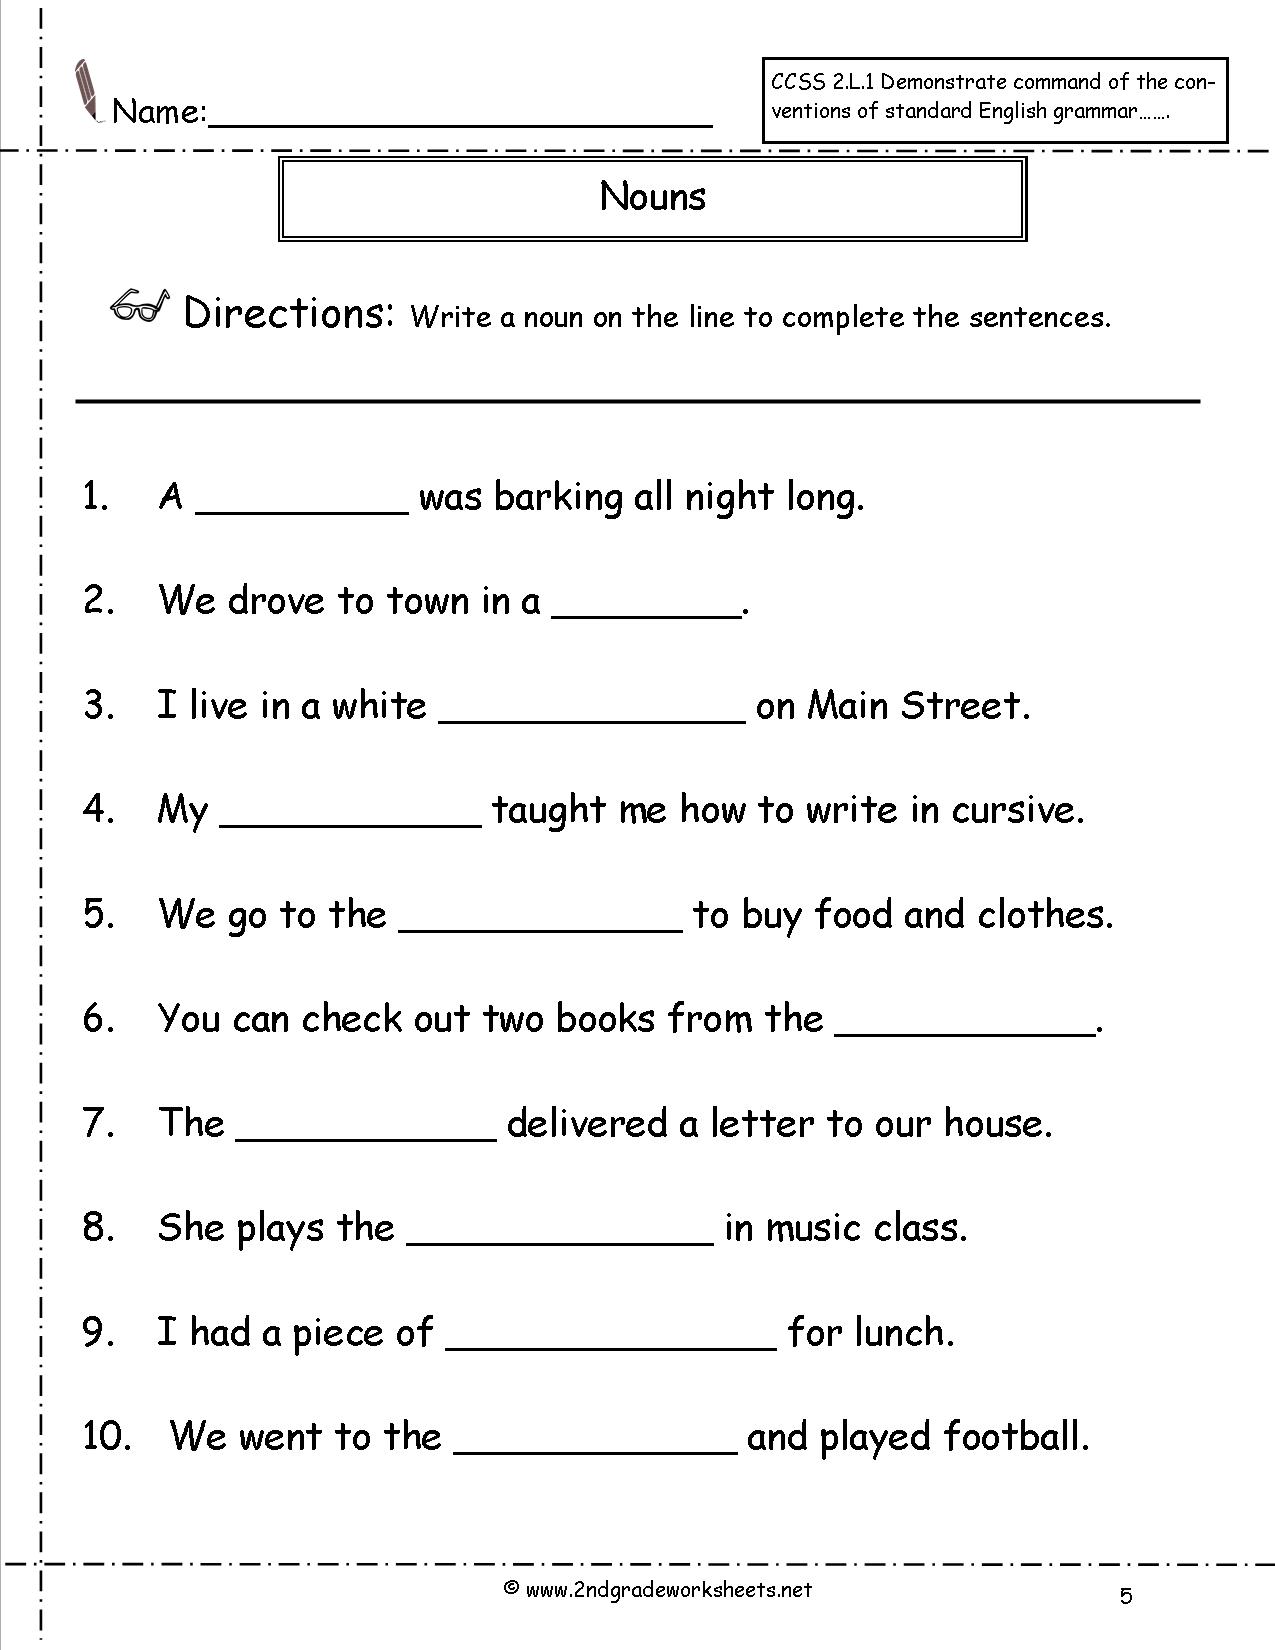 Nouns Worksheets 2nd Grade Image